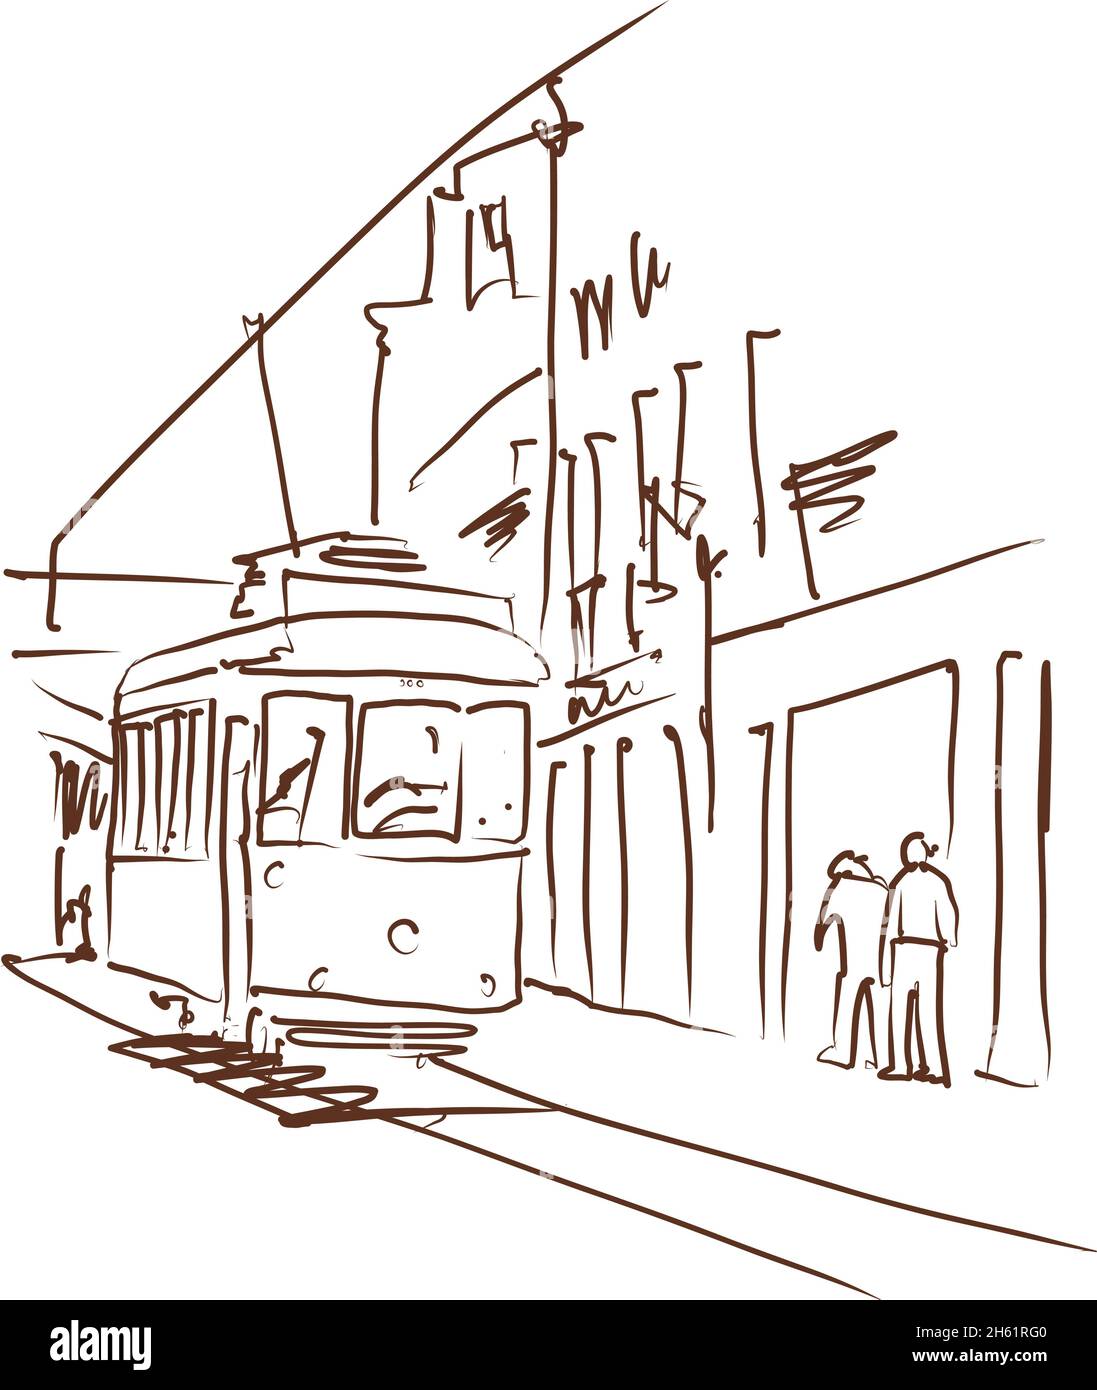 Vecchio tram a Lisbona - illustrazione vettoriale. Schema del tram della città di Lisbona. Illustrazione Vettoriale